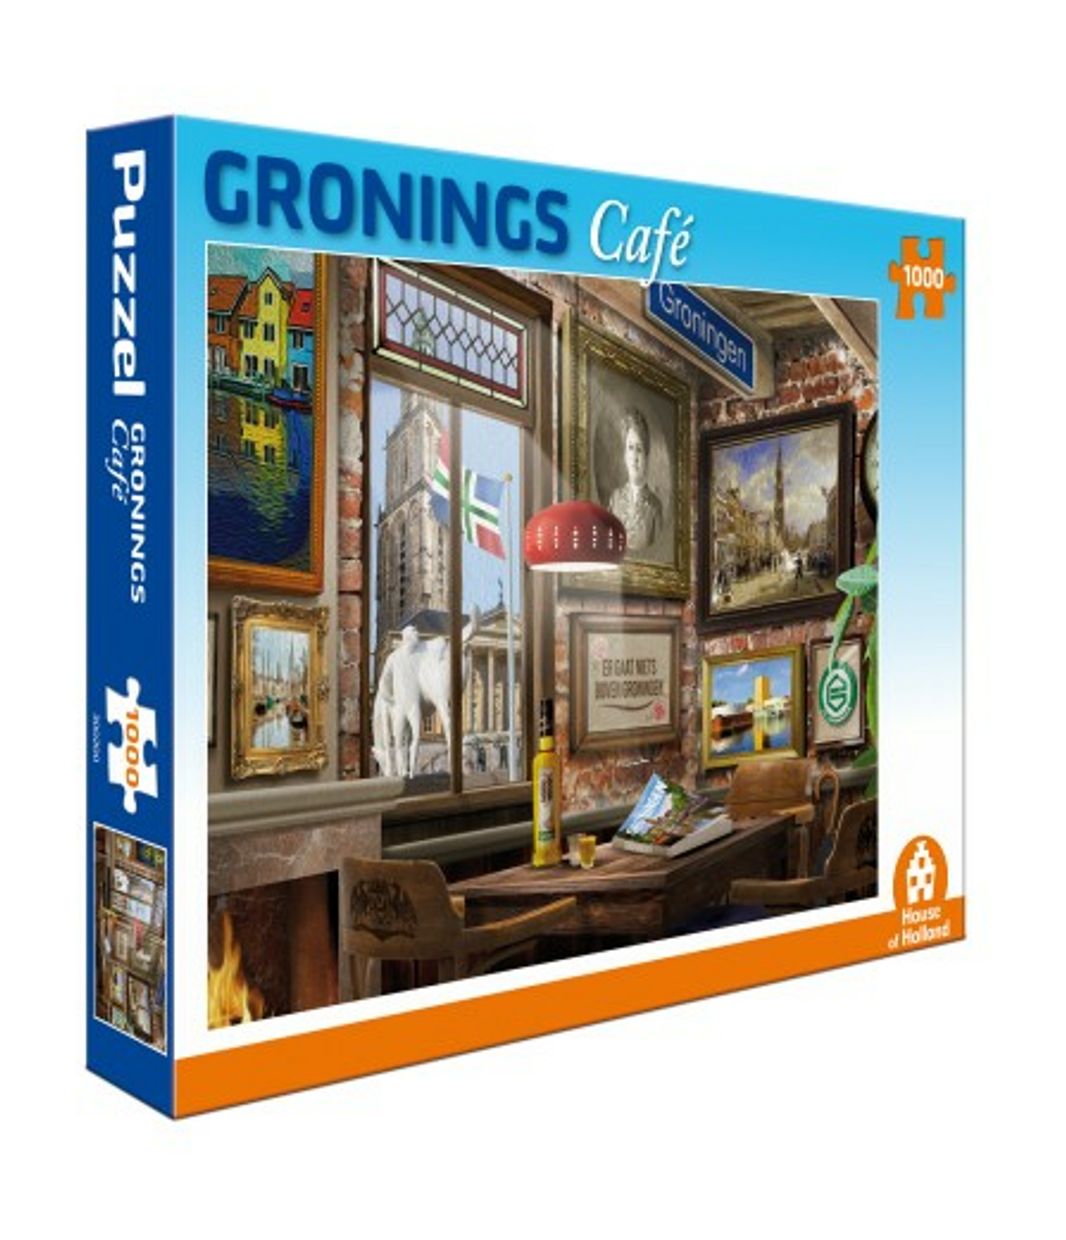 zeewier steeg De volgende Legpuzzel Gronings Café | House of holland - - | Warenhuis Groningen